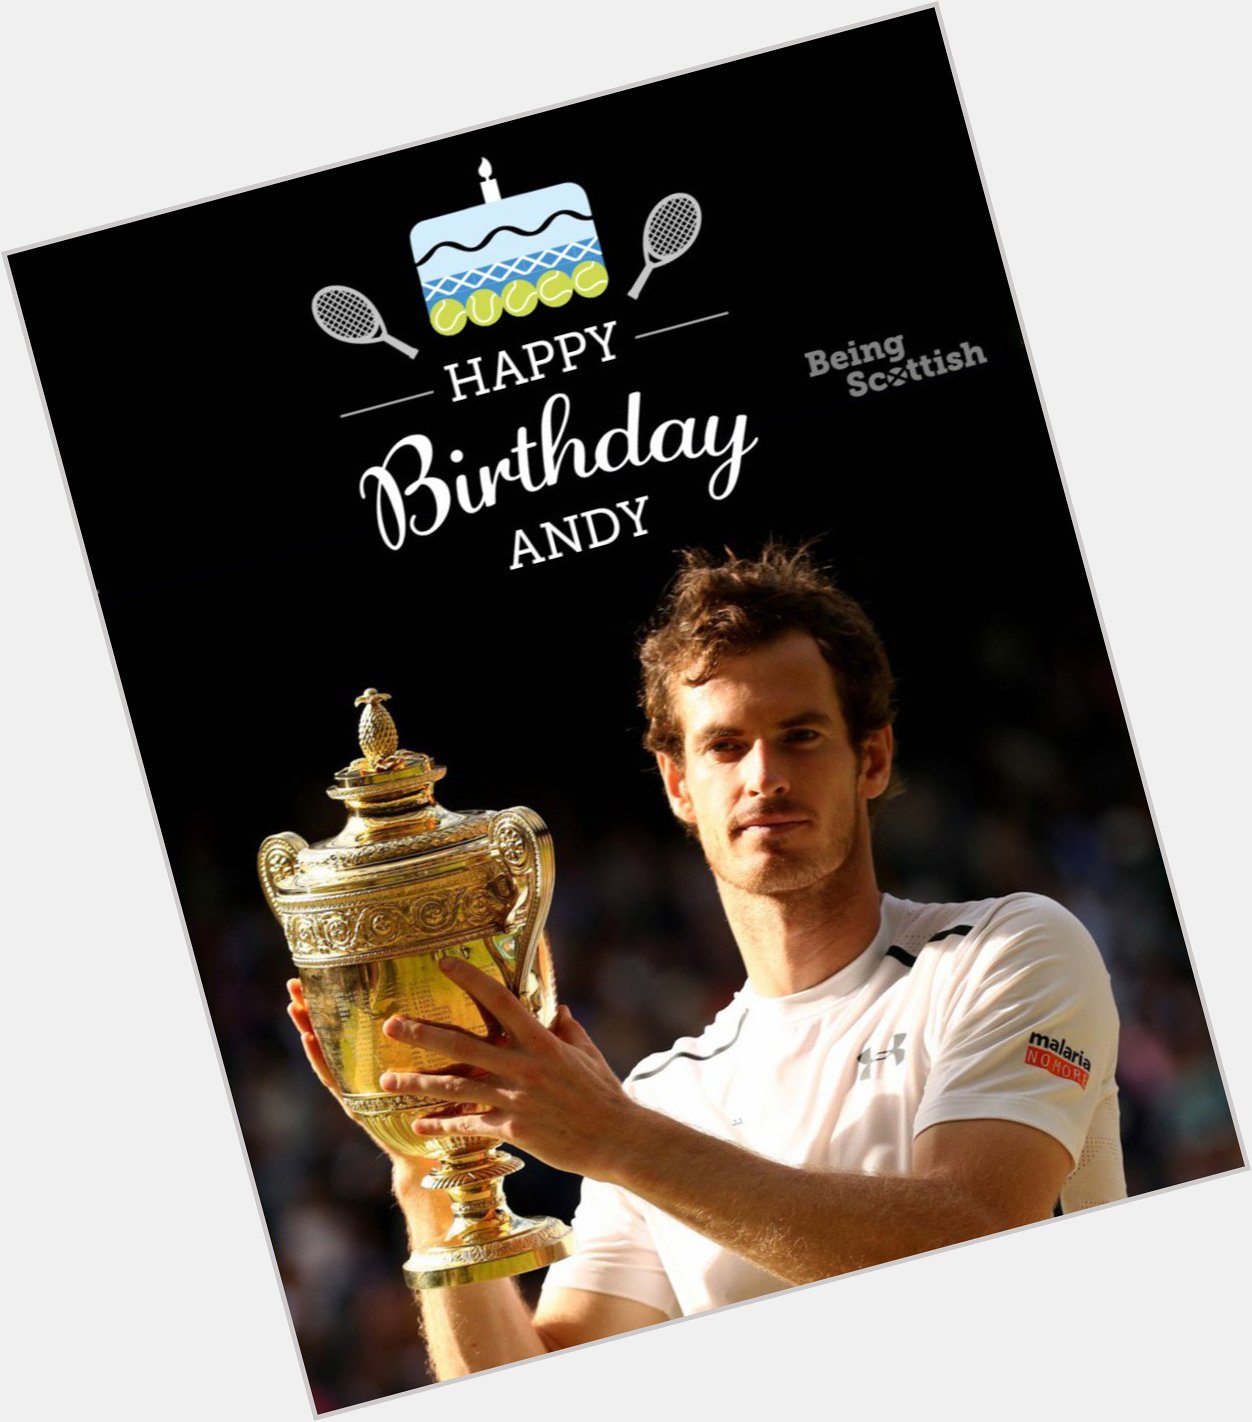 Happy birthday to Scotland\s tennis superstar  